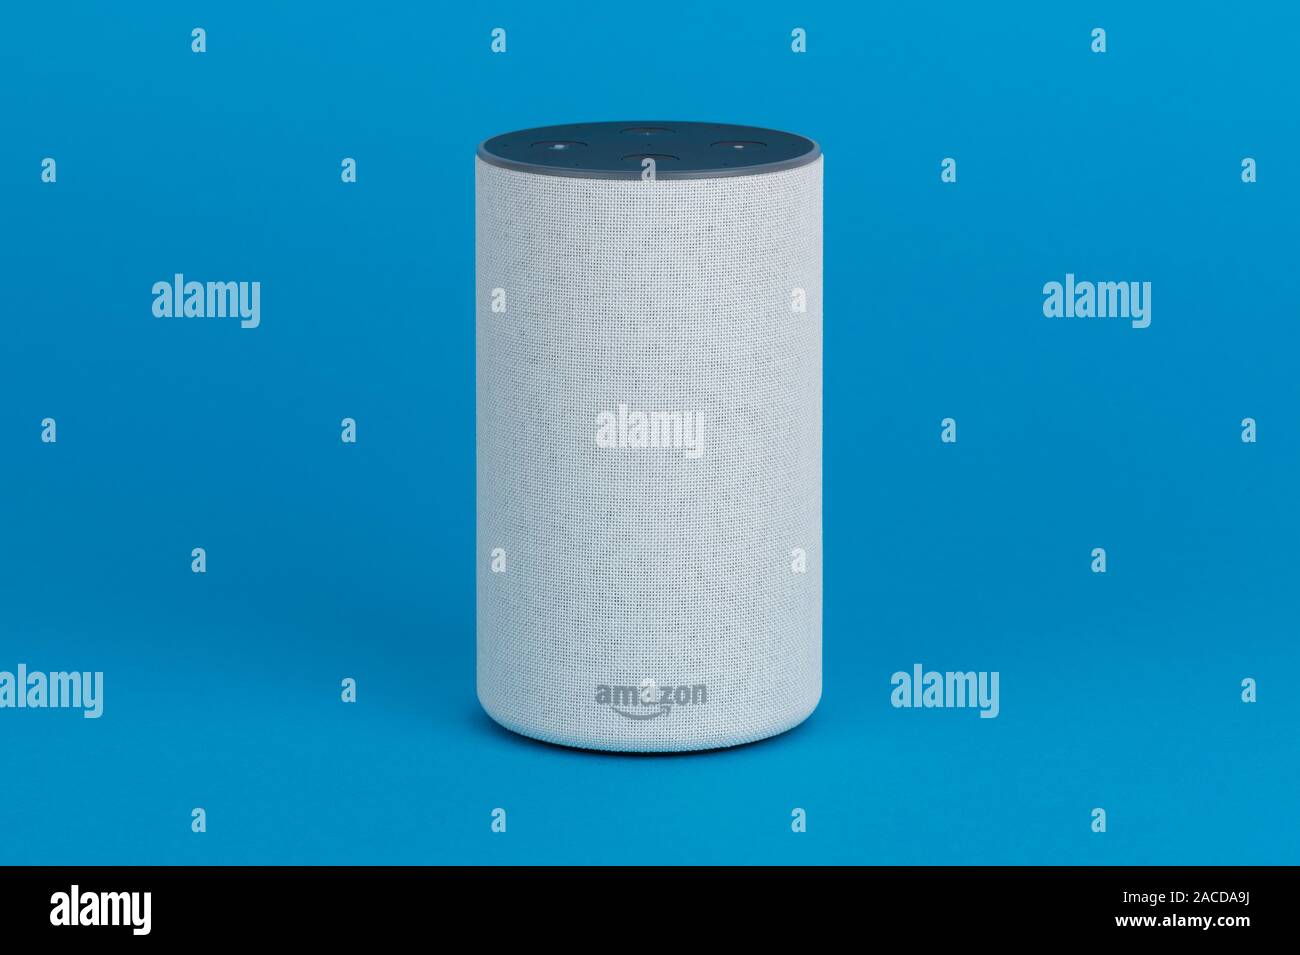 2017 La libération d'un Amazon Echo (2e génération) smart speaker et d'assistant personnel Alexa tourné sur un fond bleu. Banque D'Images